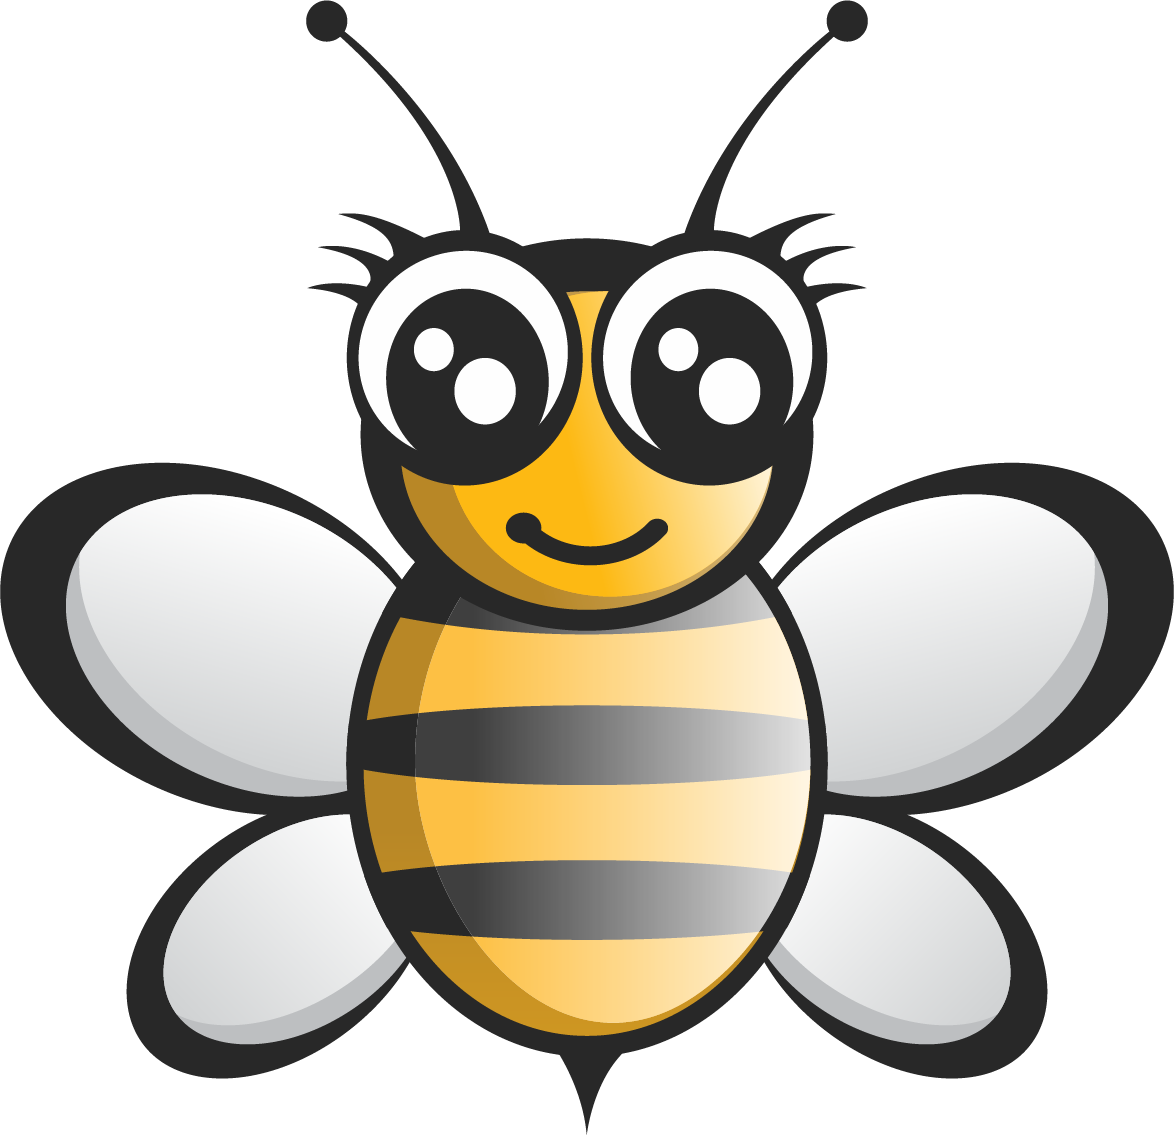 Bee Logo Cdr - Bee Logo Cdr (1174x1135)